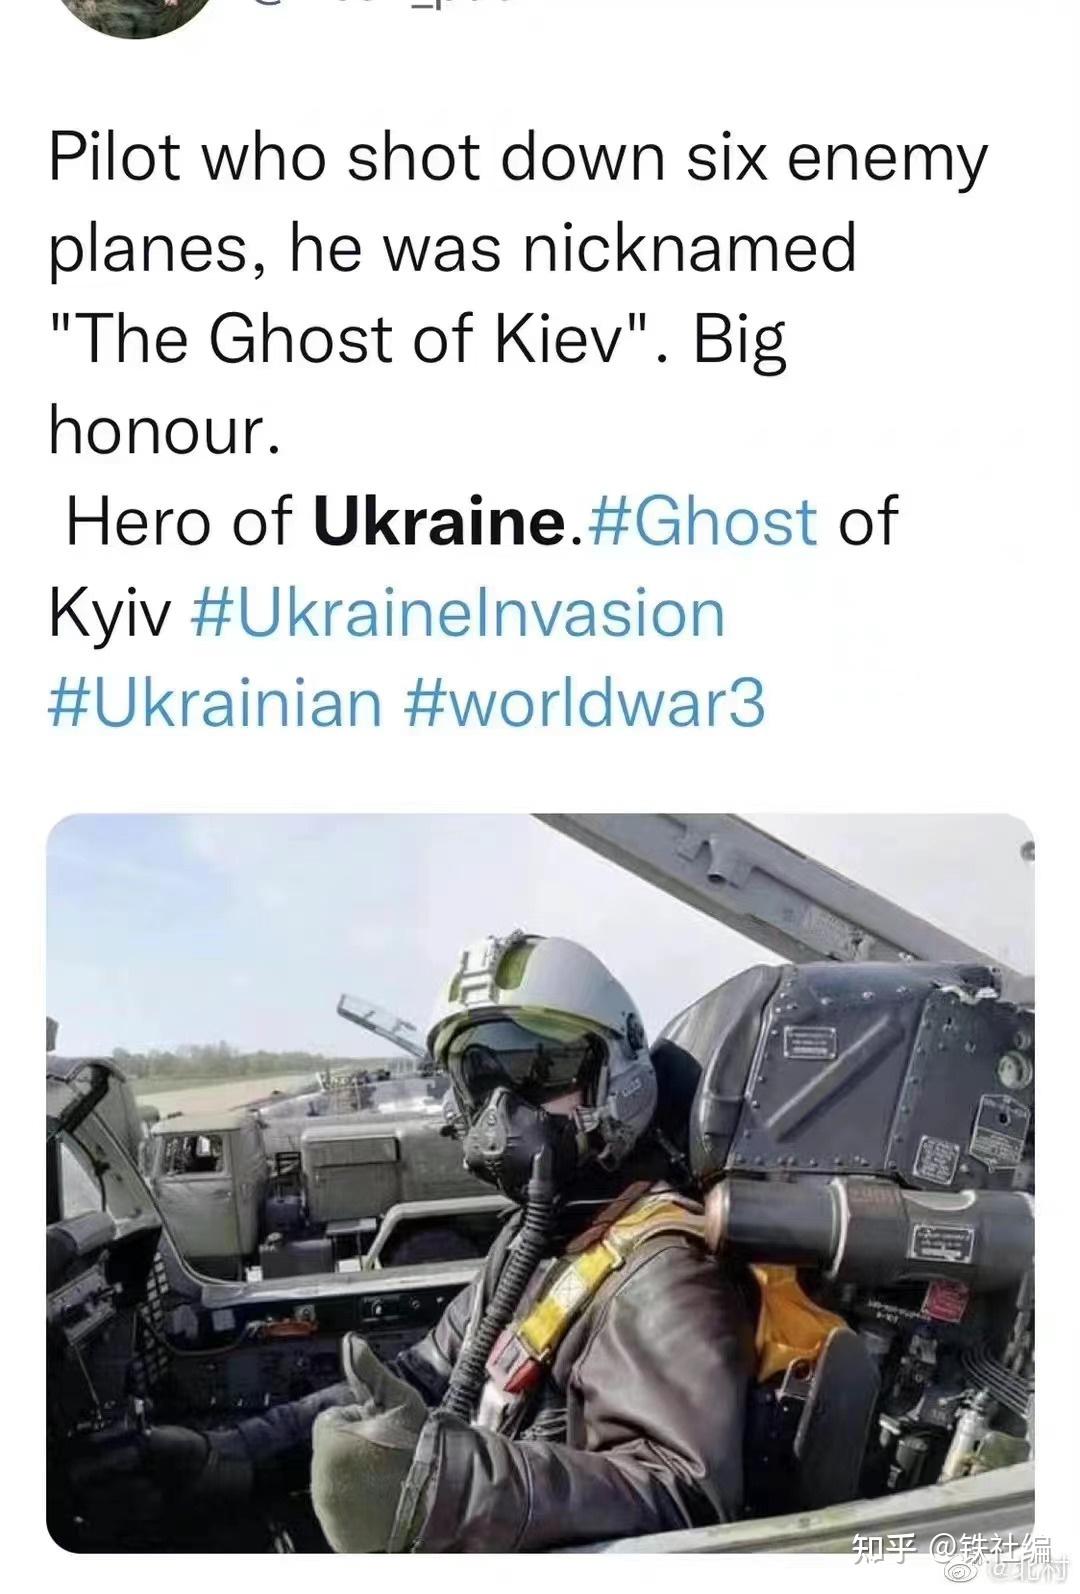 关于质疑基辅幽灵(ghost of kyiv)6杀敌机的乌克兰王牌飞行员说法